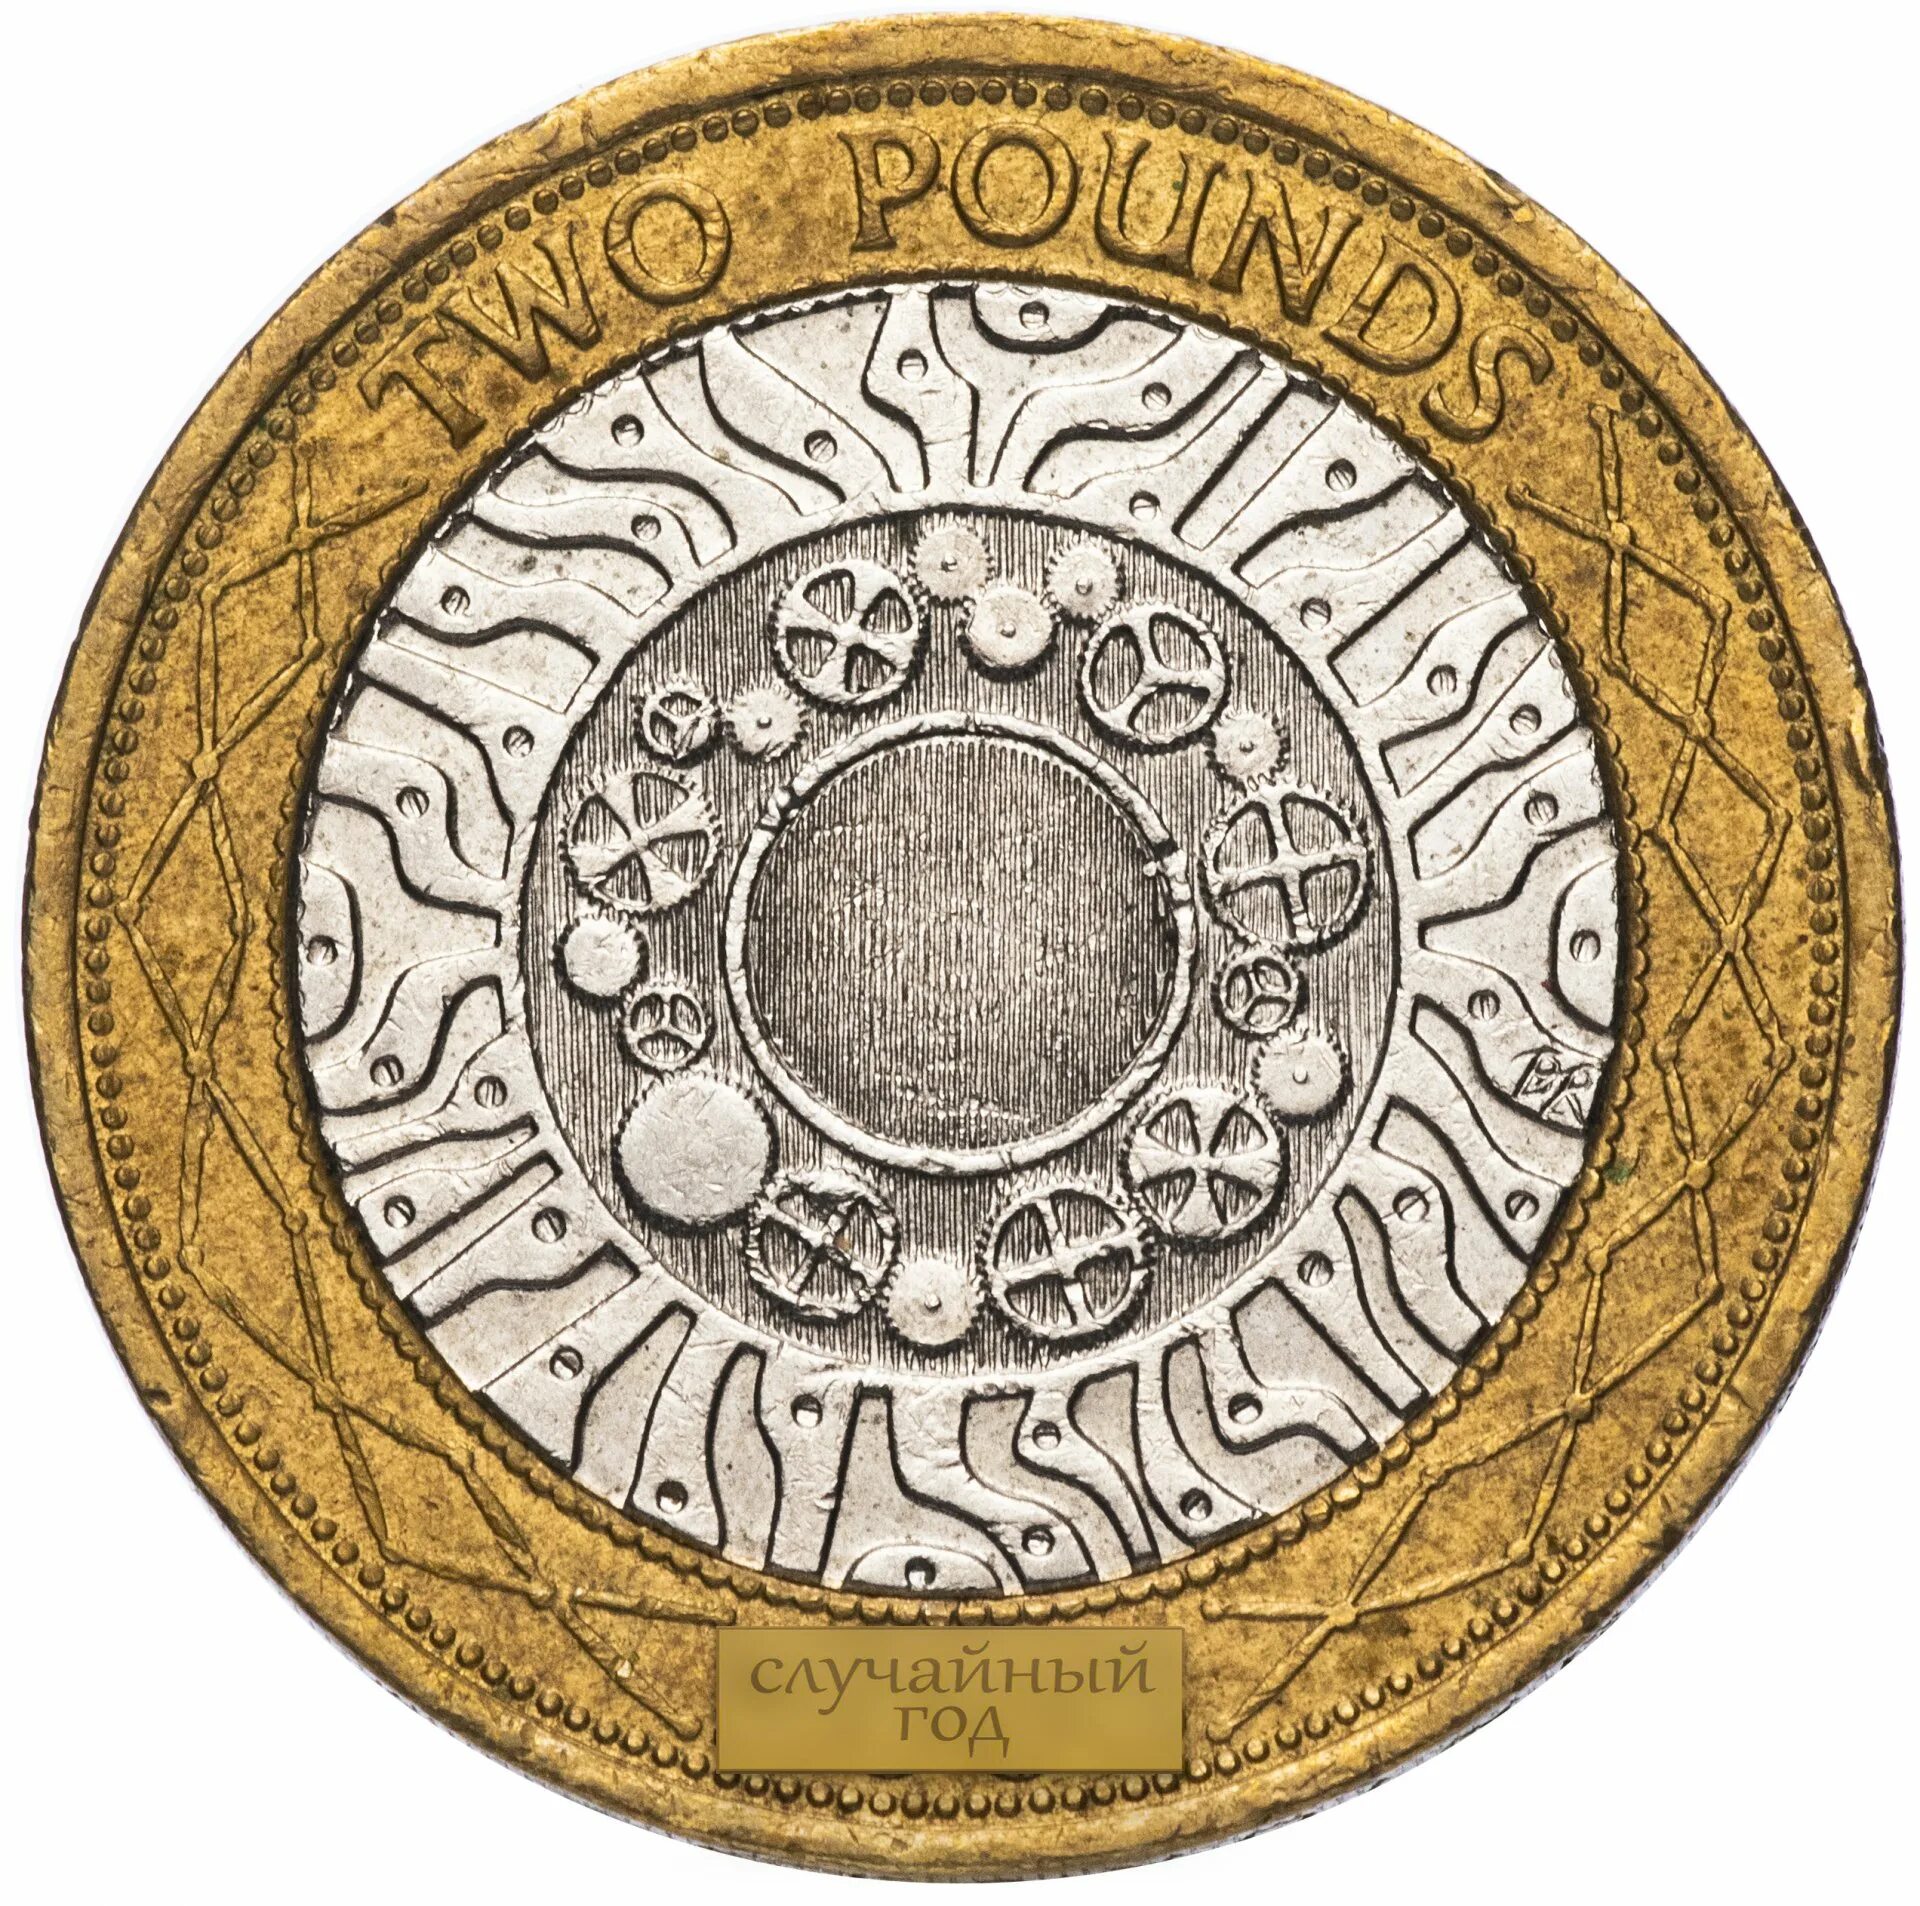 Two coins. 2 Фунта монета. 2 Фунта Великобритания. Elizabeth || 1998 монета. Монета 2 фунта Великобритания 2015 год.